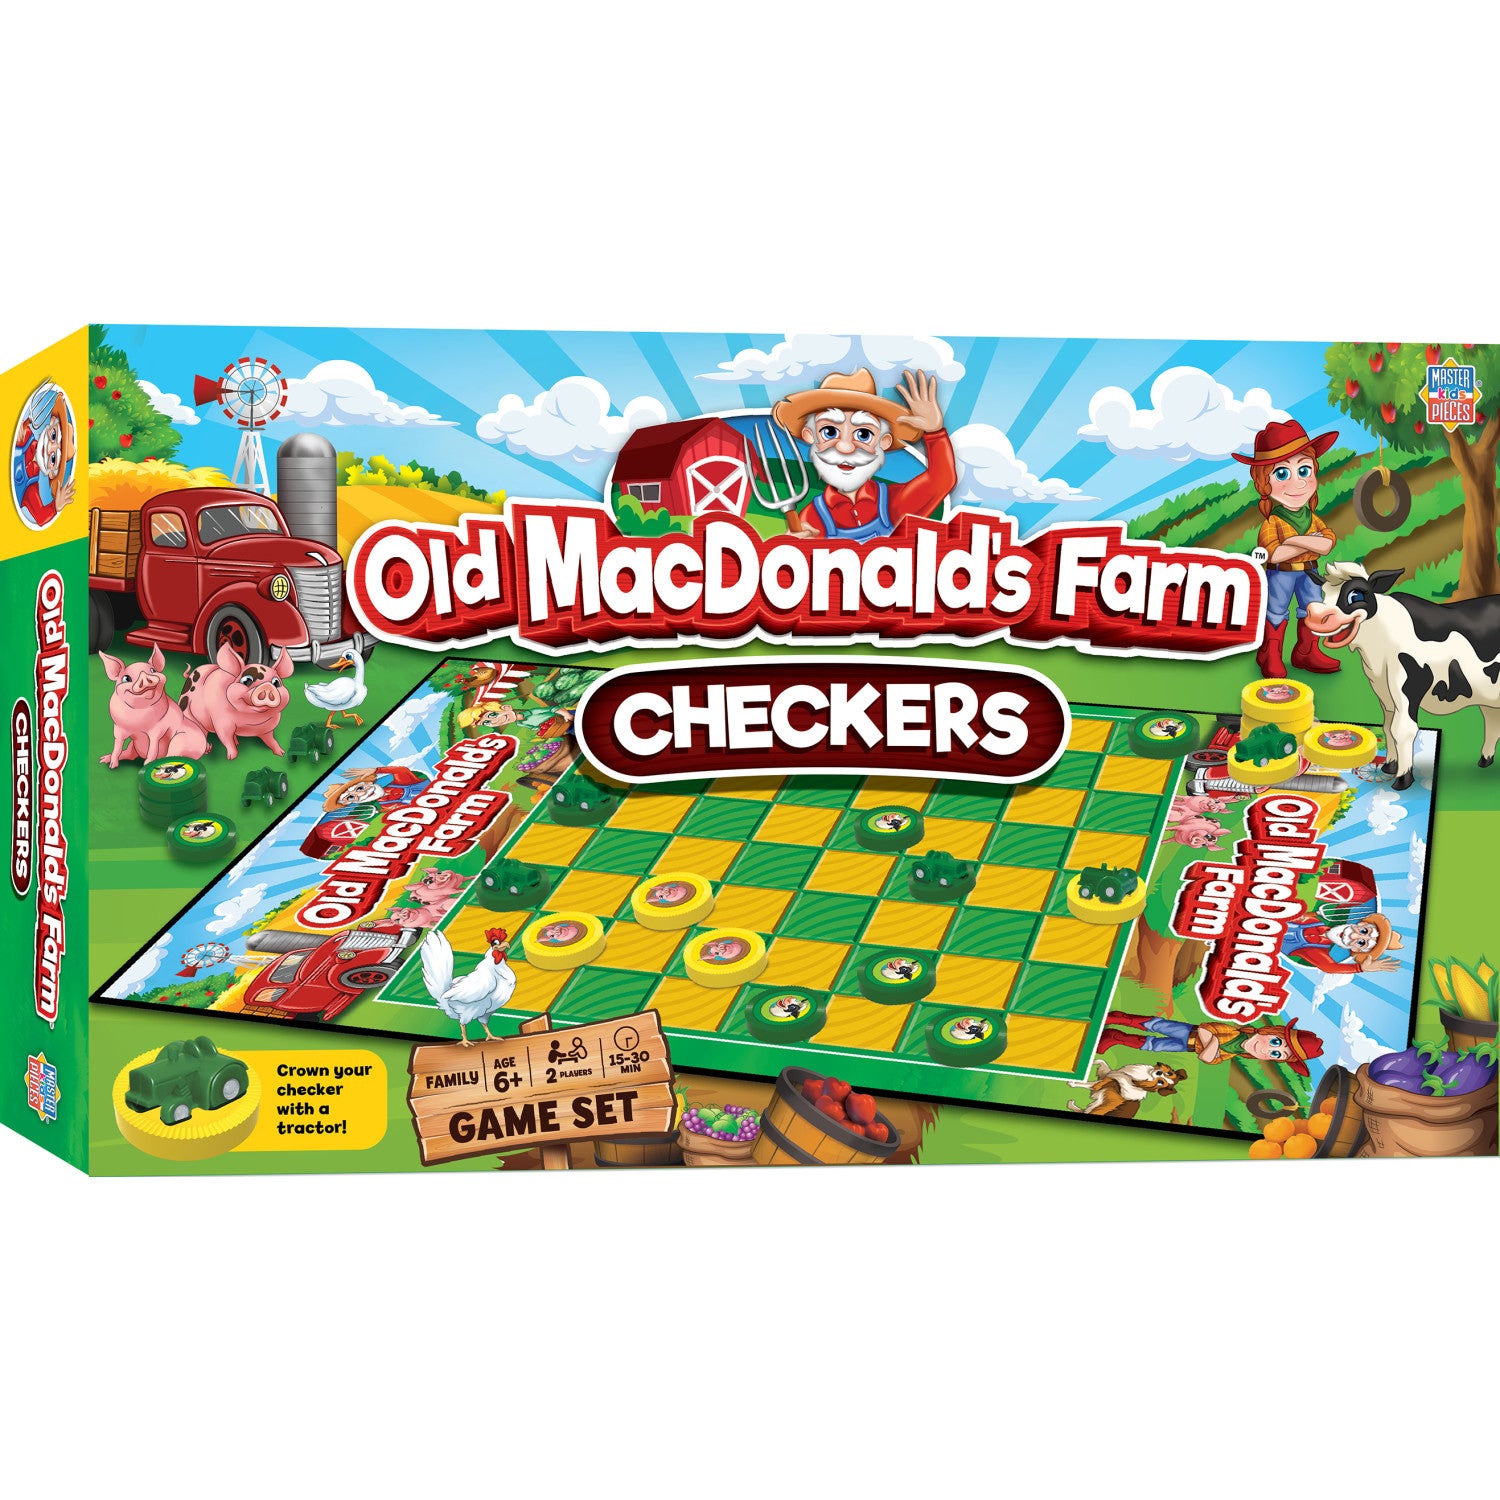 Old MacDonald's Farm Checkers Board Game